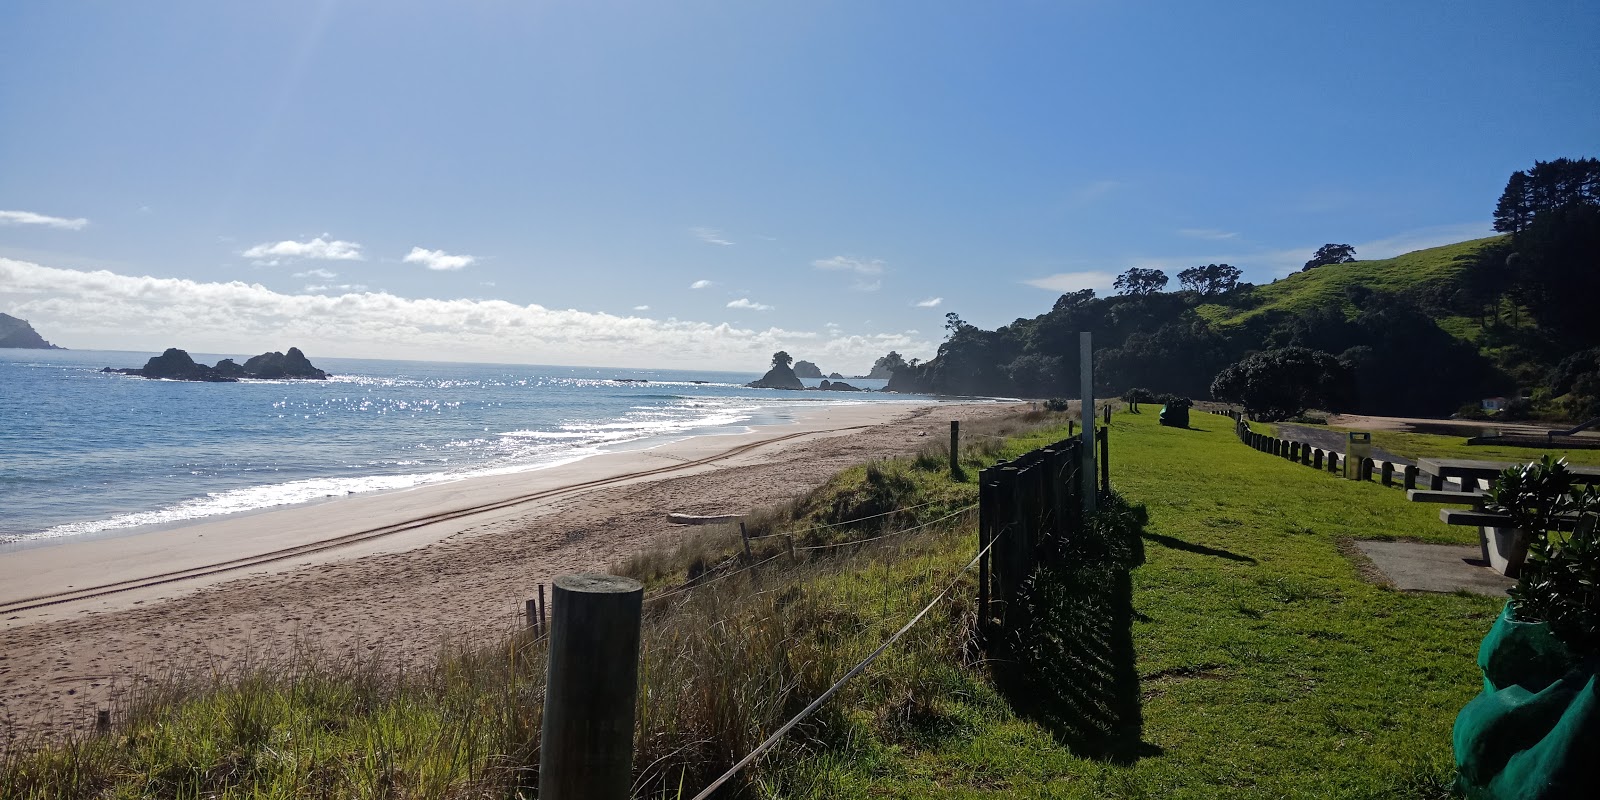 Photo de Tauranga Bay Beach - endroit populaire parmi les connaisseurs de la détente